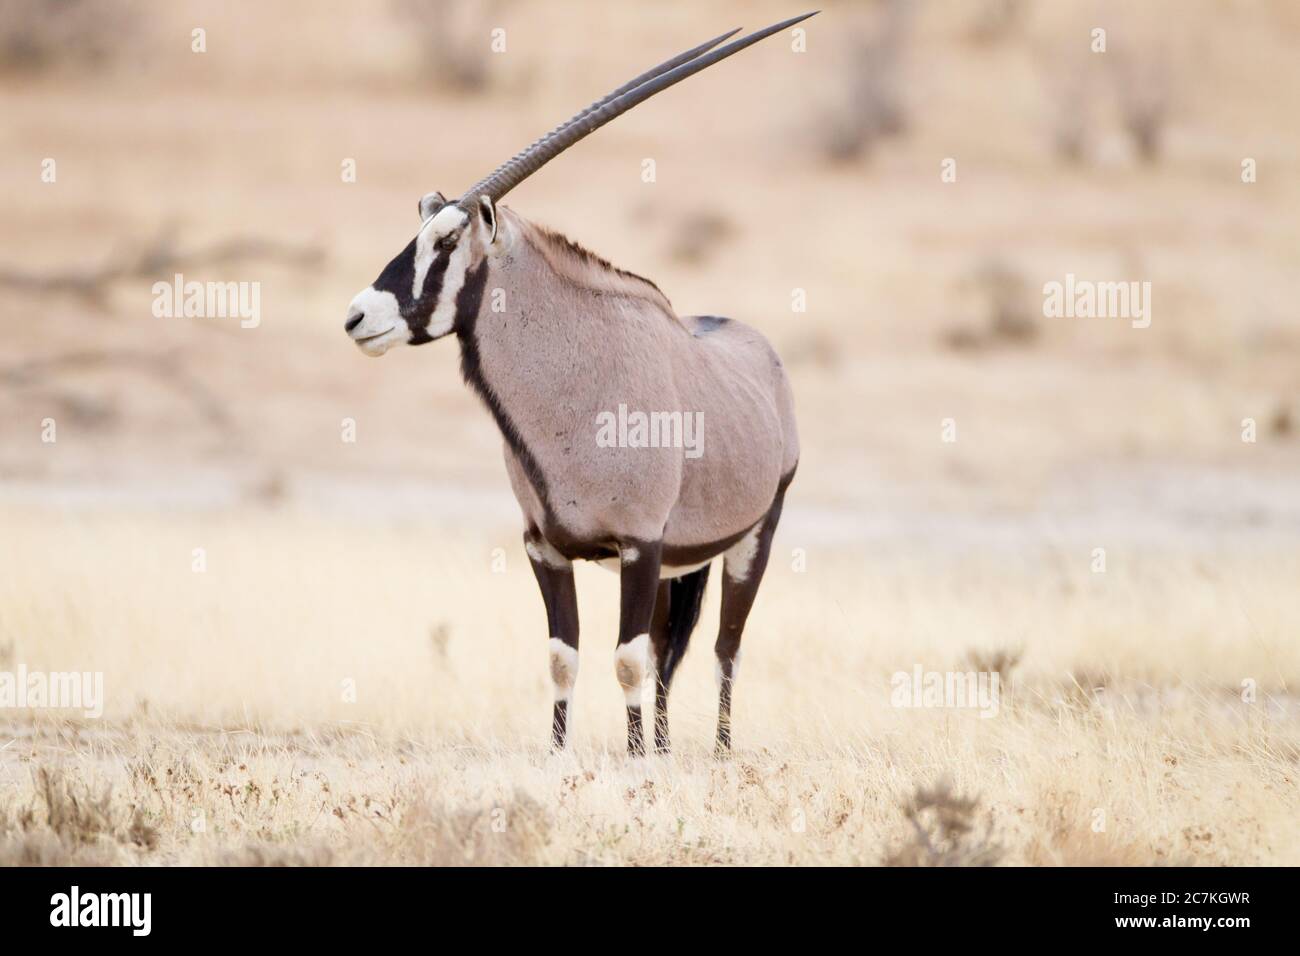 Bellissimo scatto di un gemsbok in piedi sul campo cespuglio con uno sfondo sfocato Foto Stock